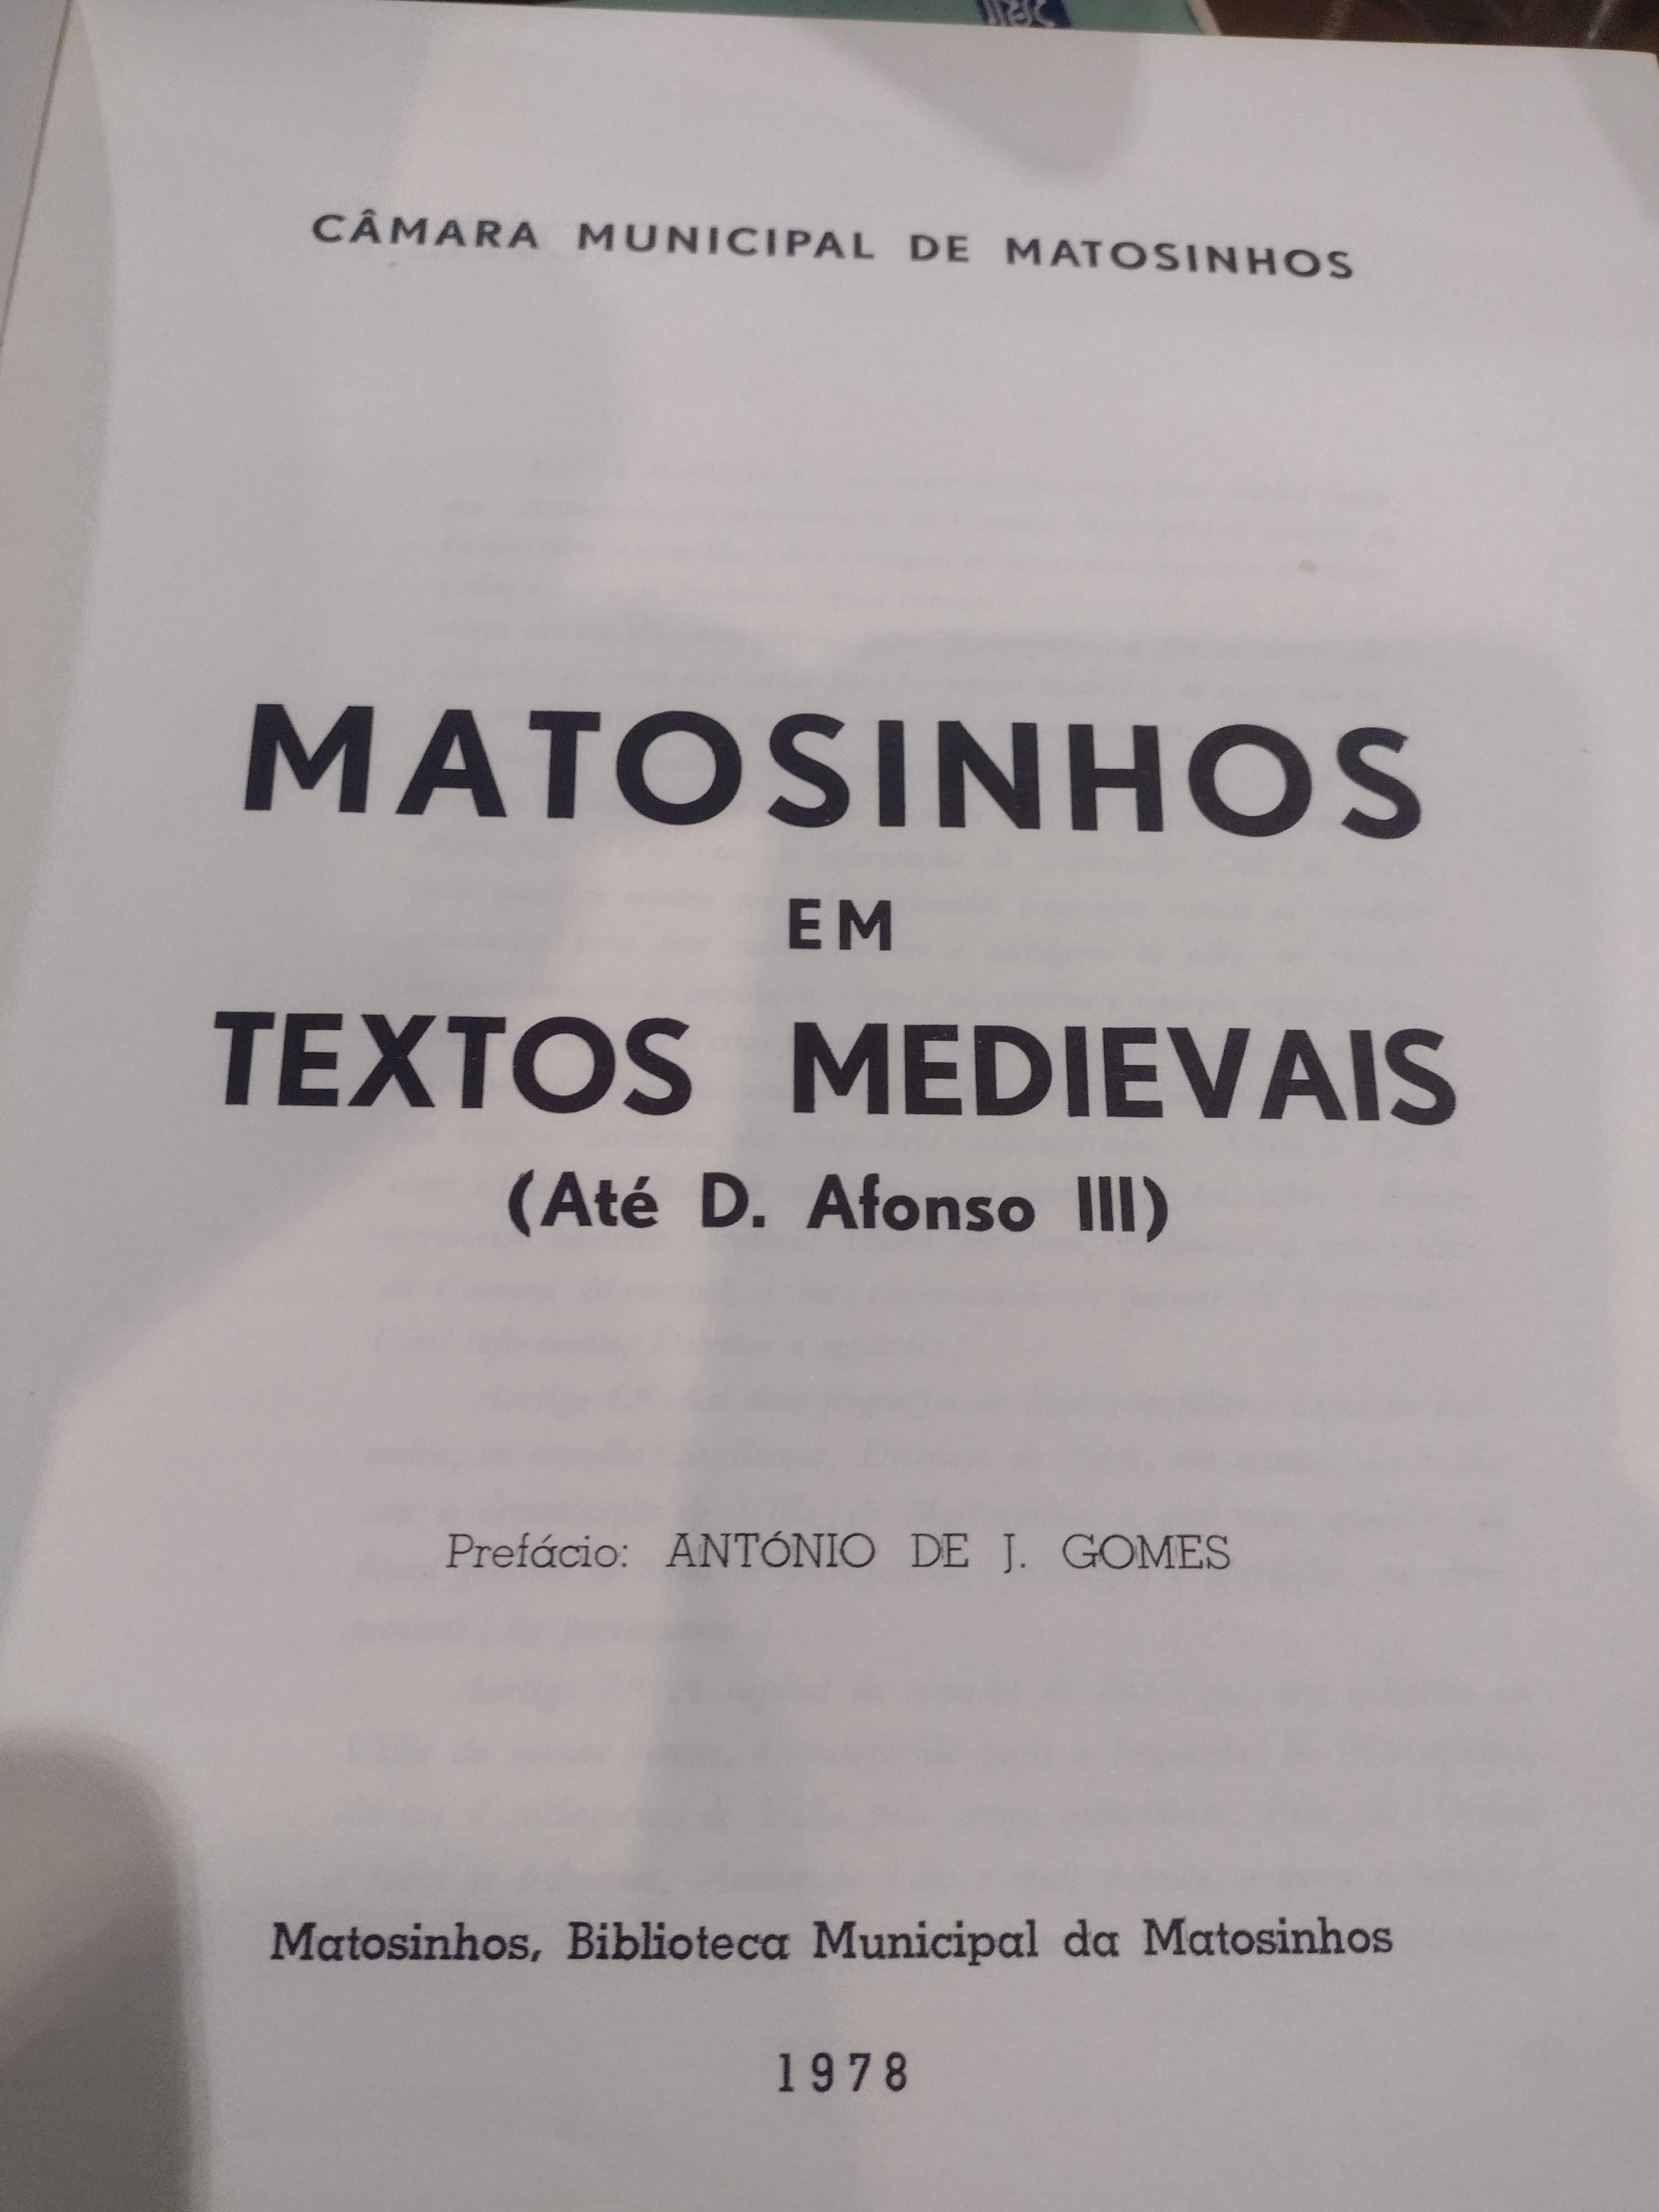 Matosinhos em Textos Medievais 1978